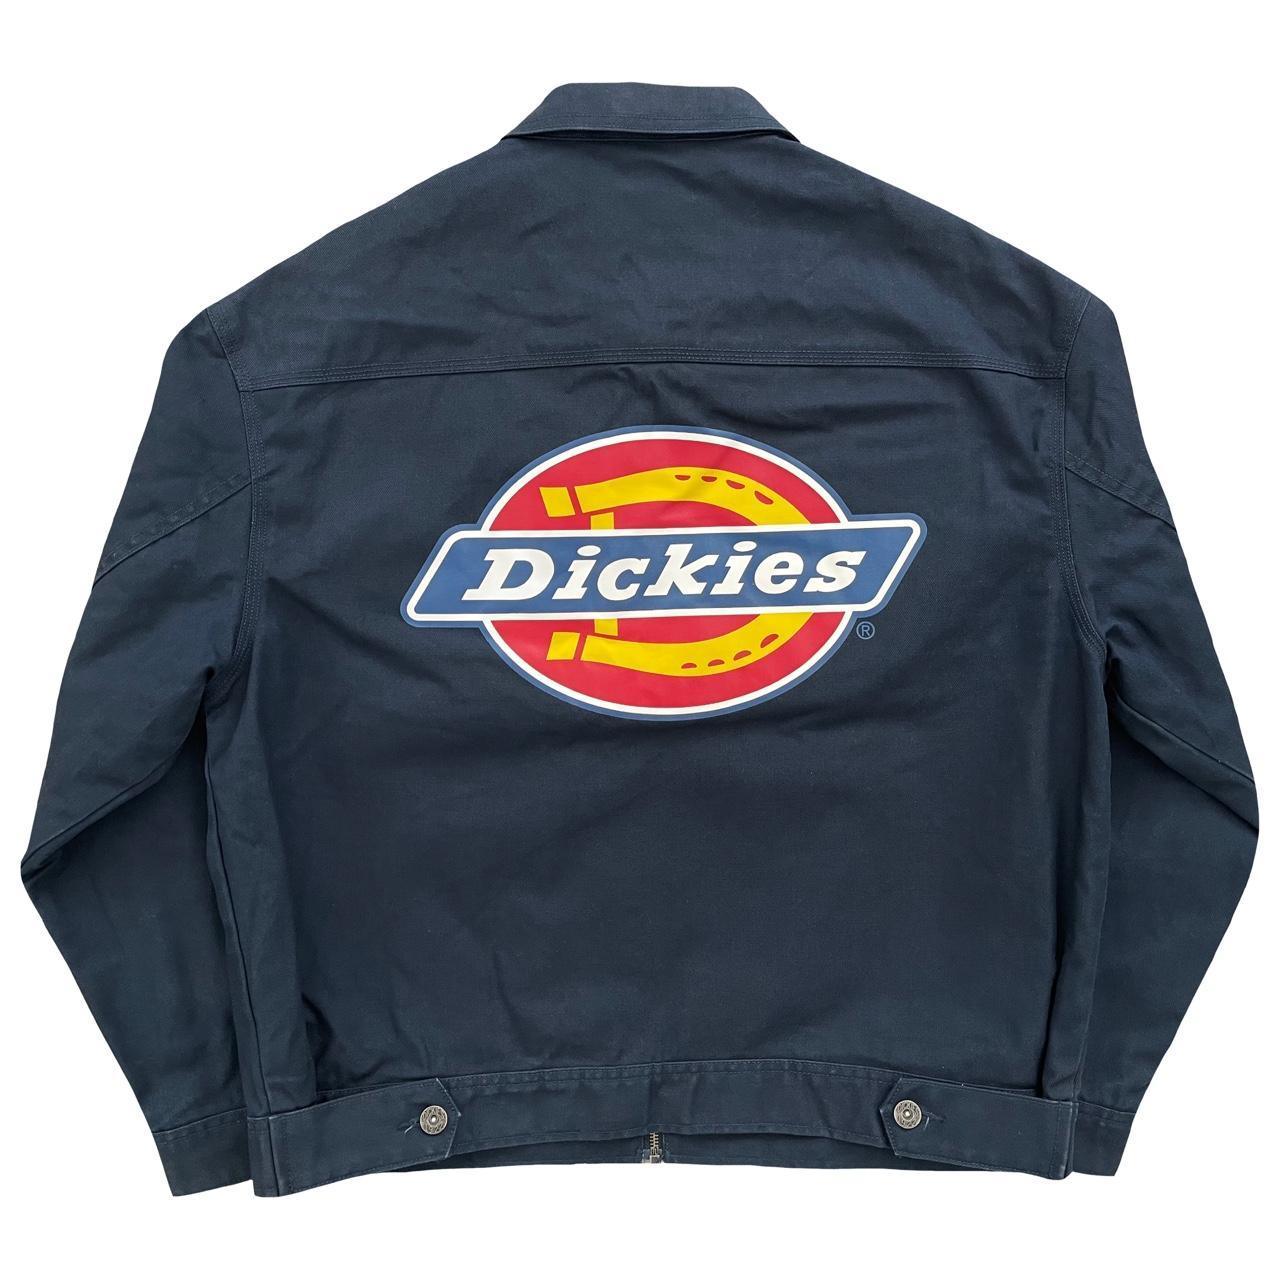 Dickies Workwear Jacket - Known Source